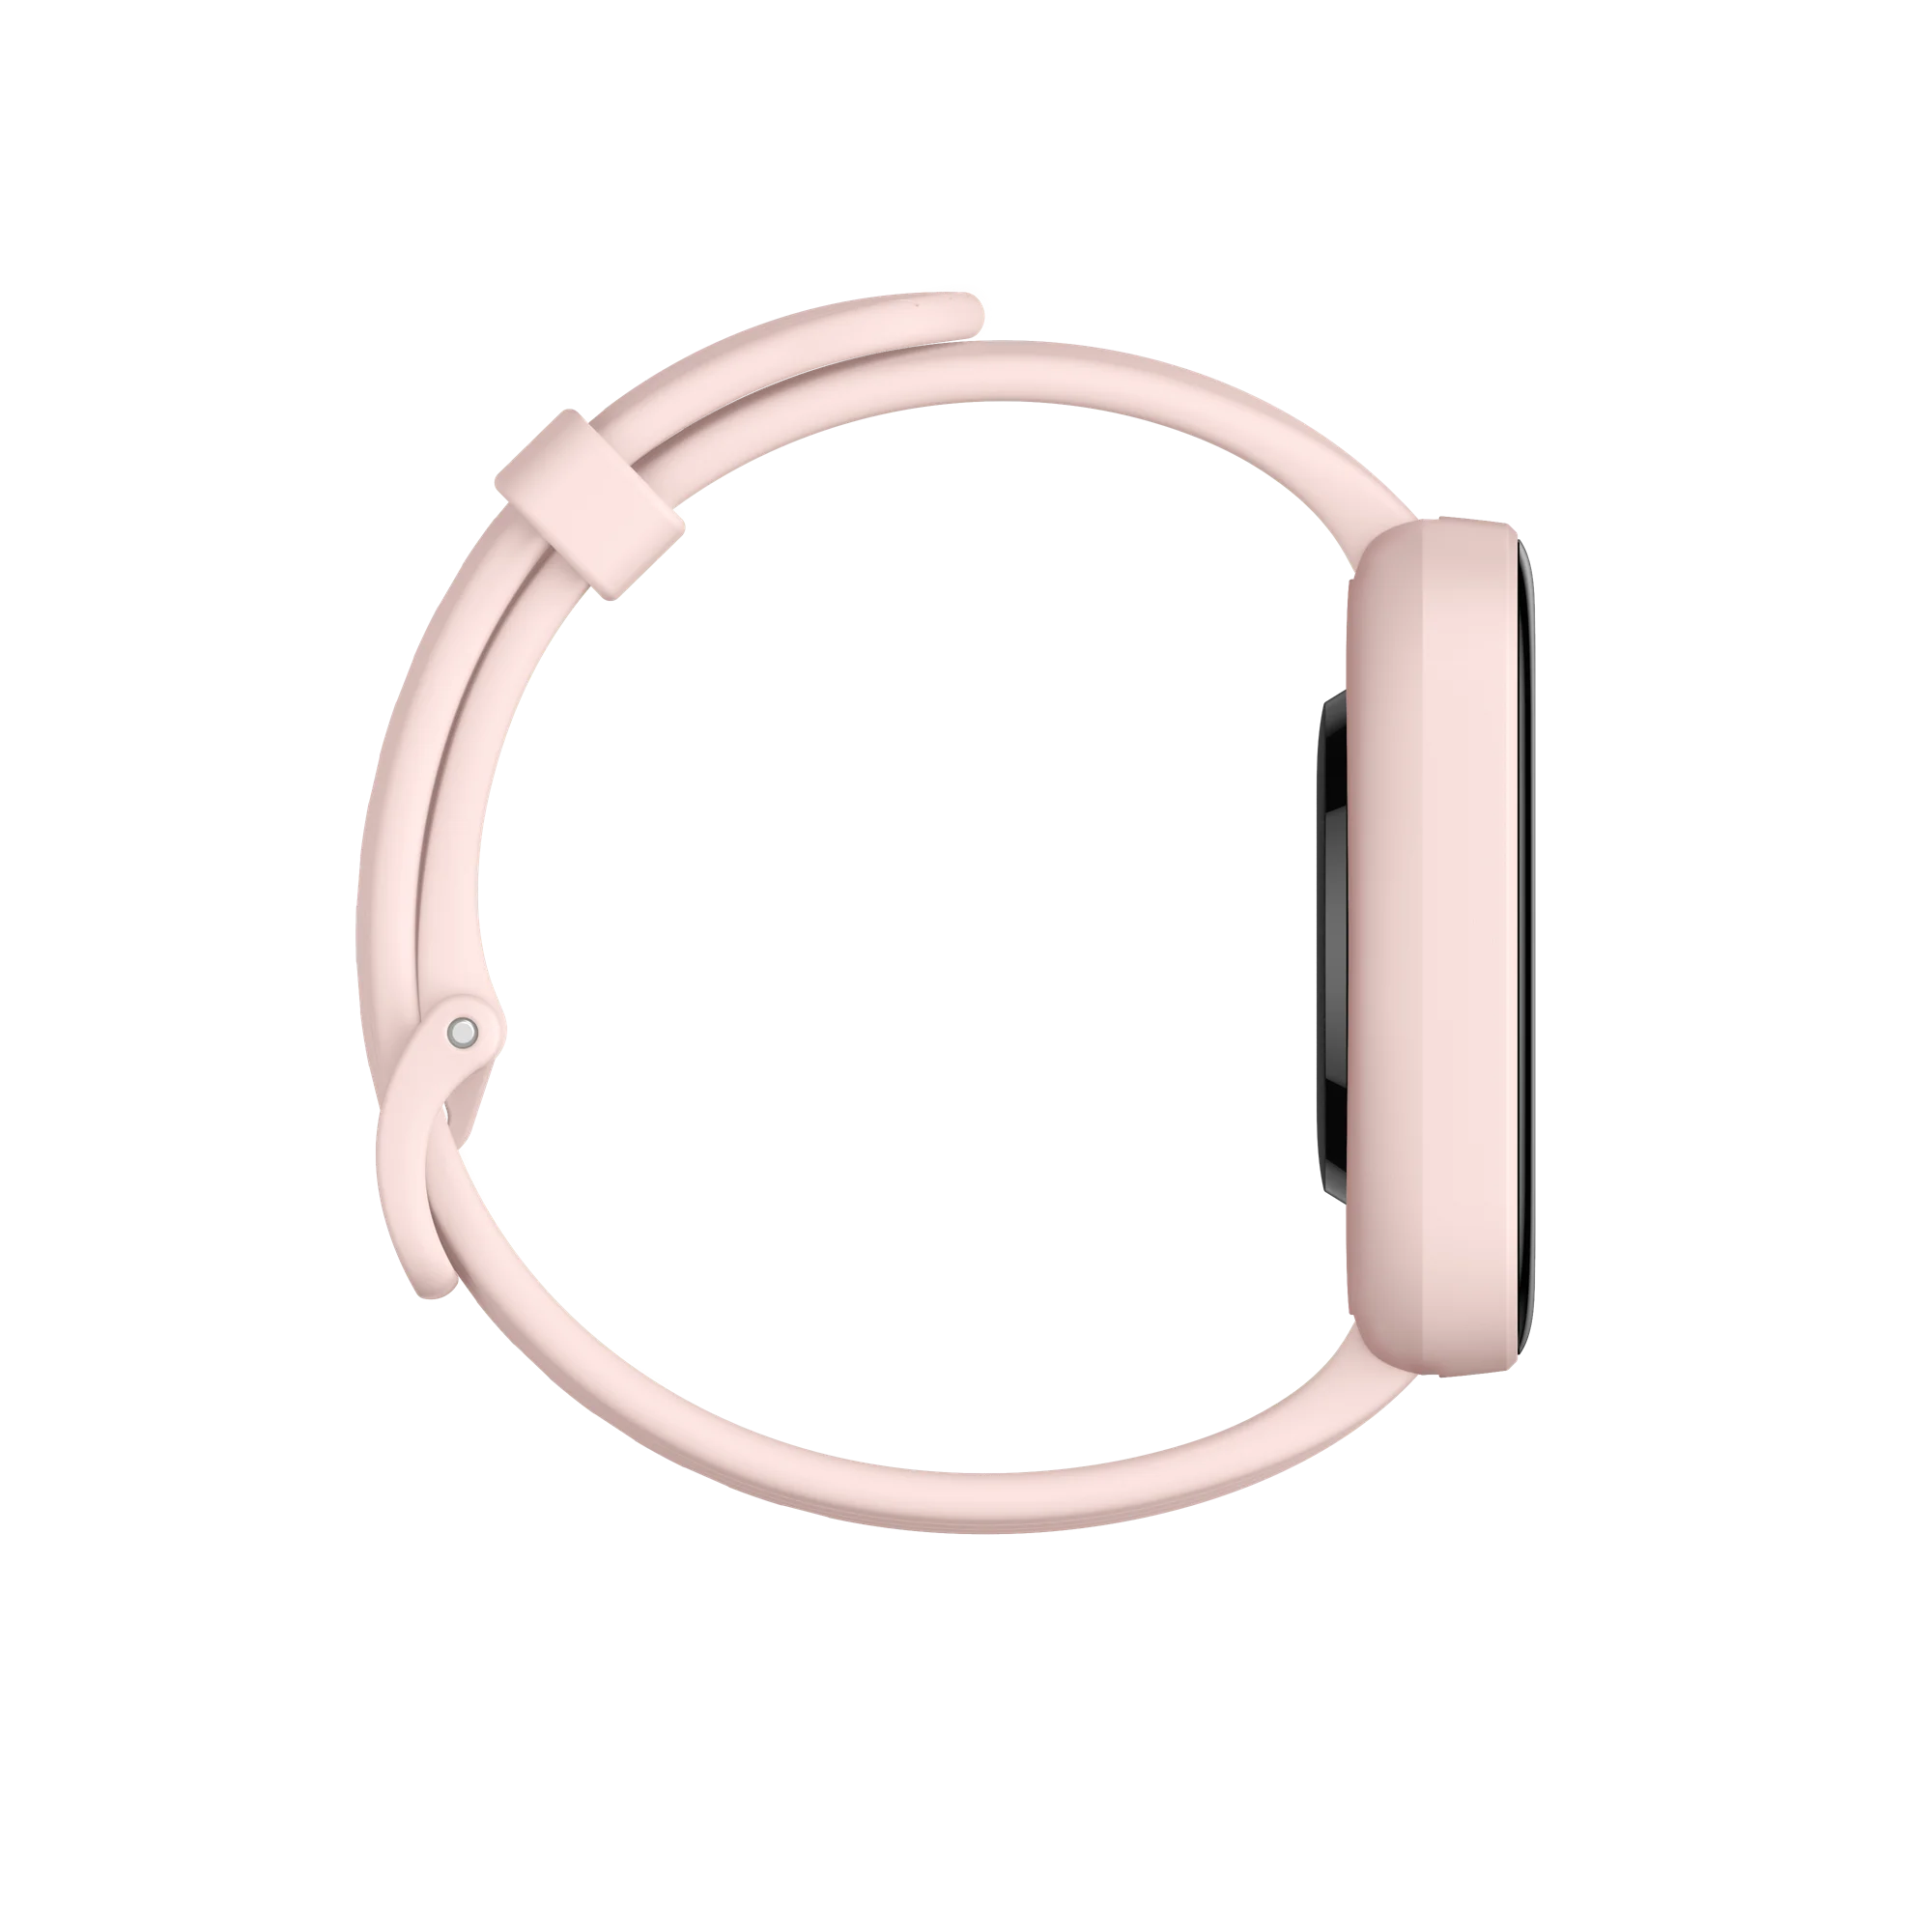 Smartwatch damski różowy Amazfit Bip 3 Pro Pink